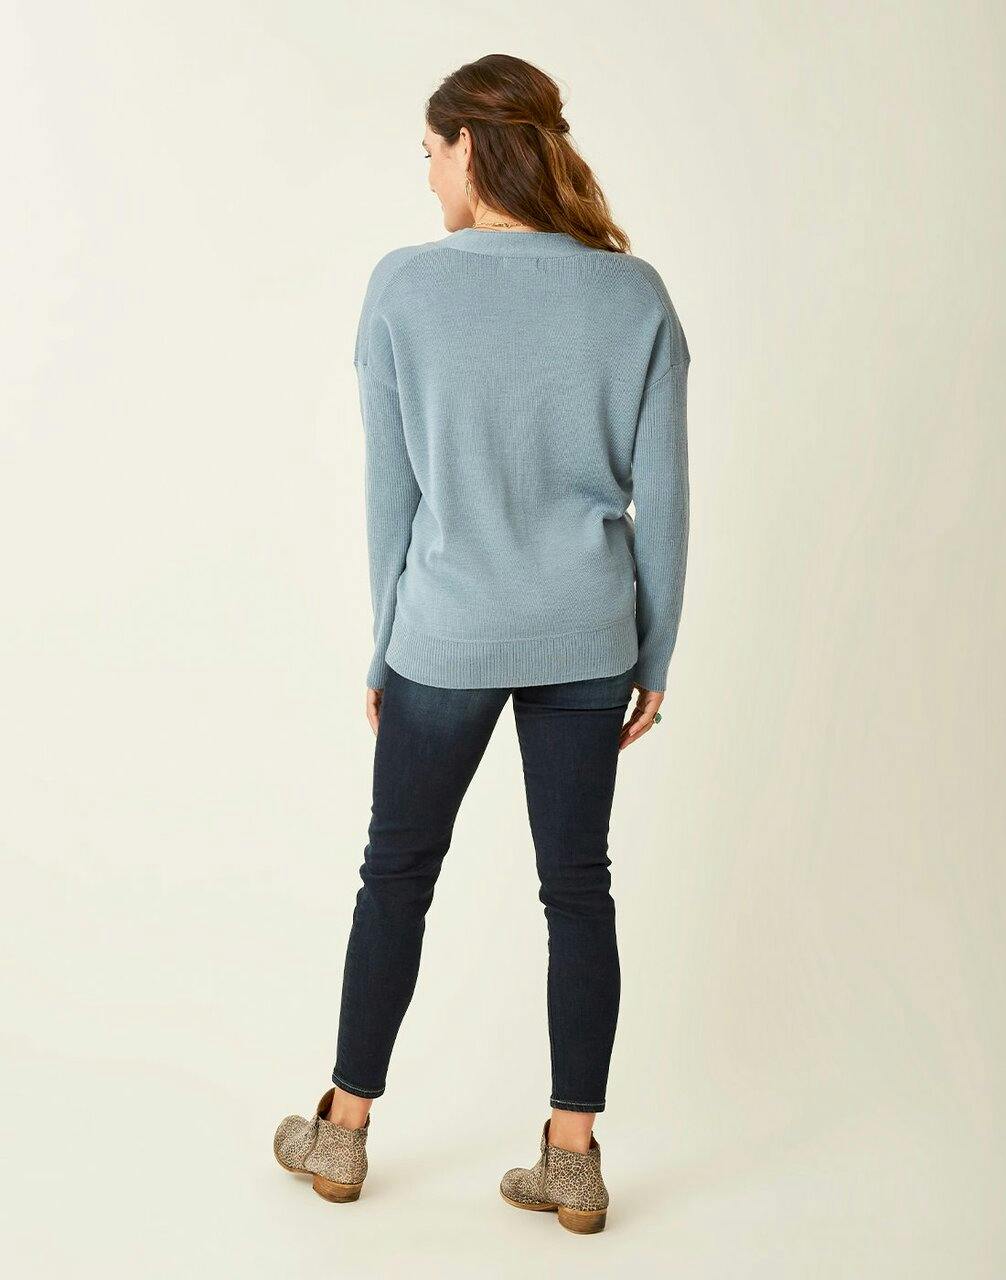 Carve Designs Women's Aurora Sweater